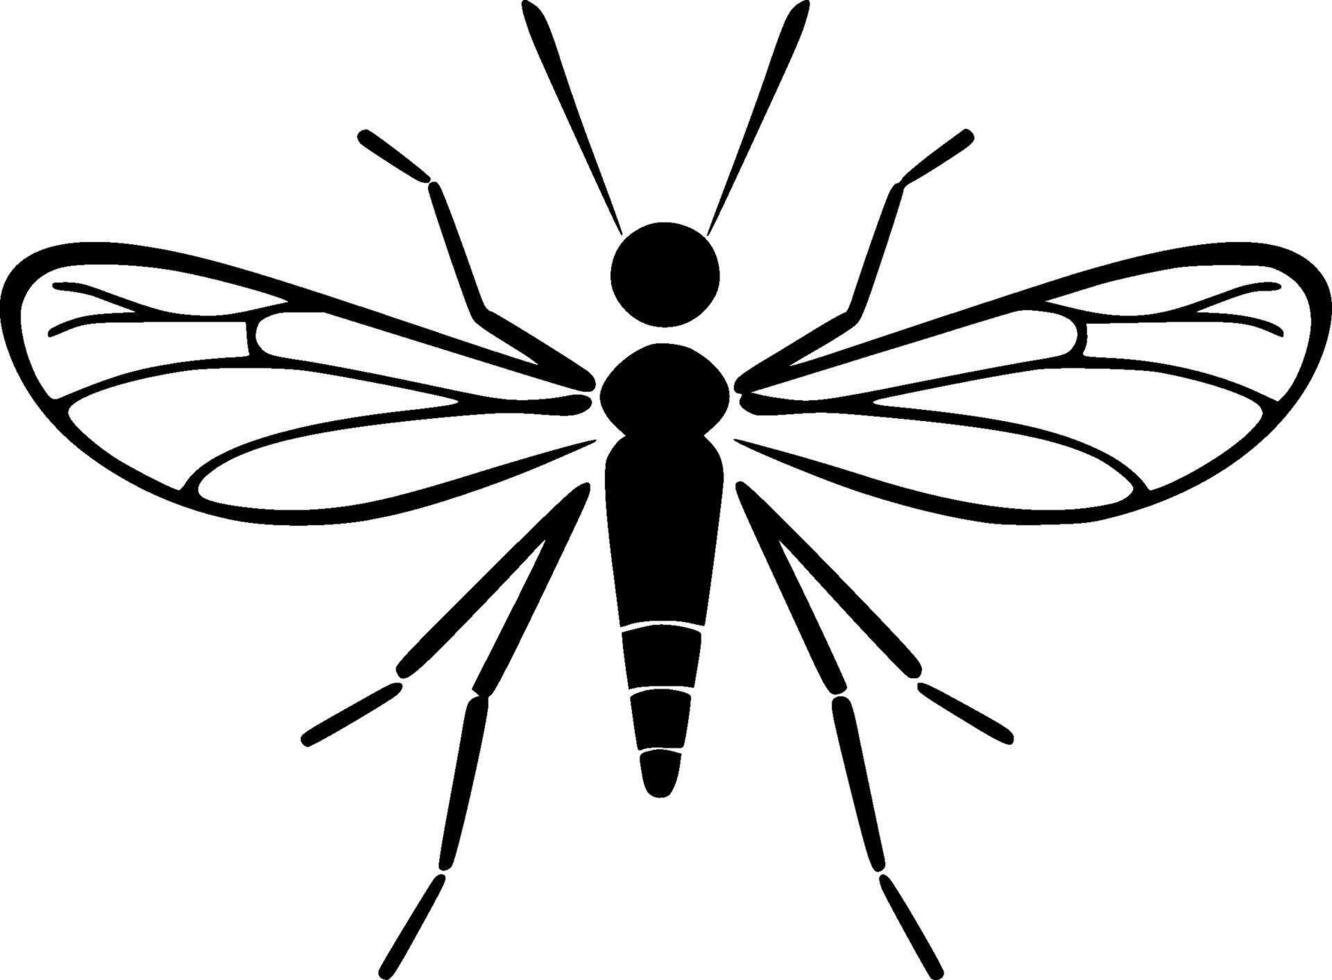 mosquito - Alto qualidade vetor logotipo - vetor ilustração ideal para camiseta gráfico